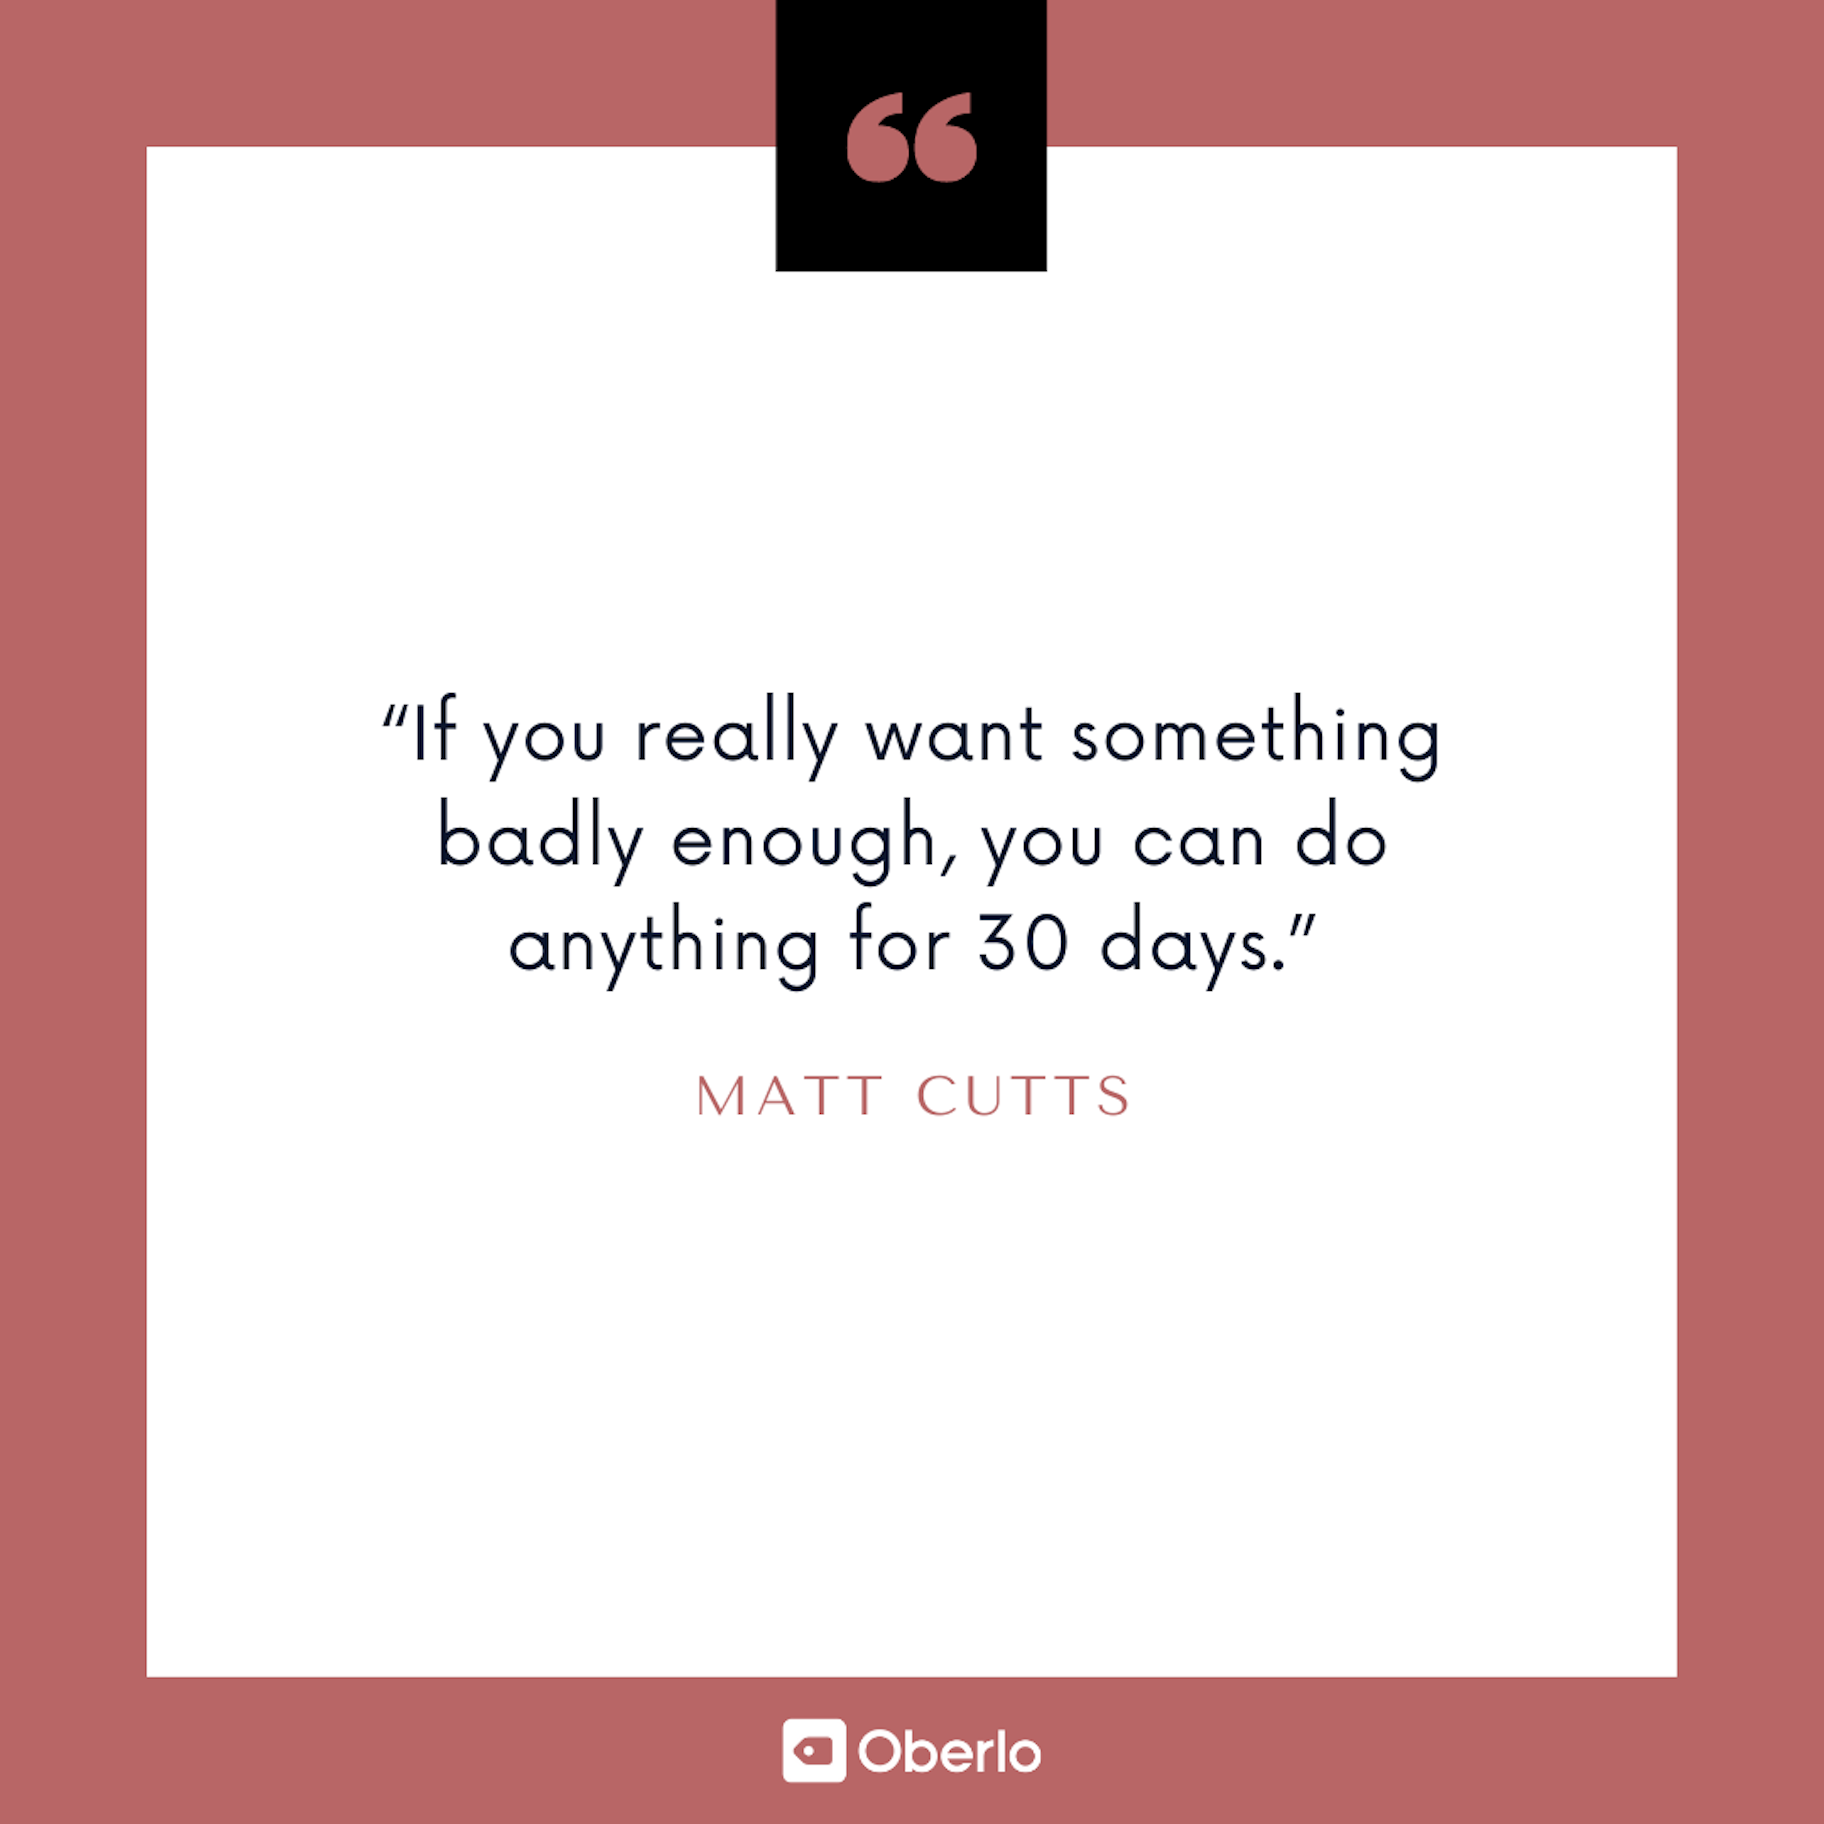 Citace: Rozvíjejte se: Matt Cutts